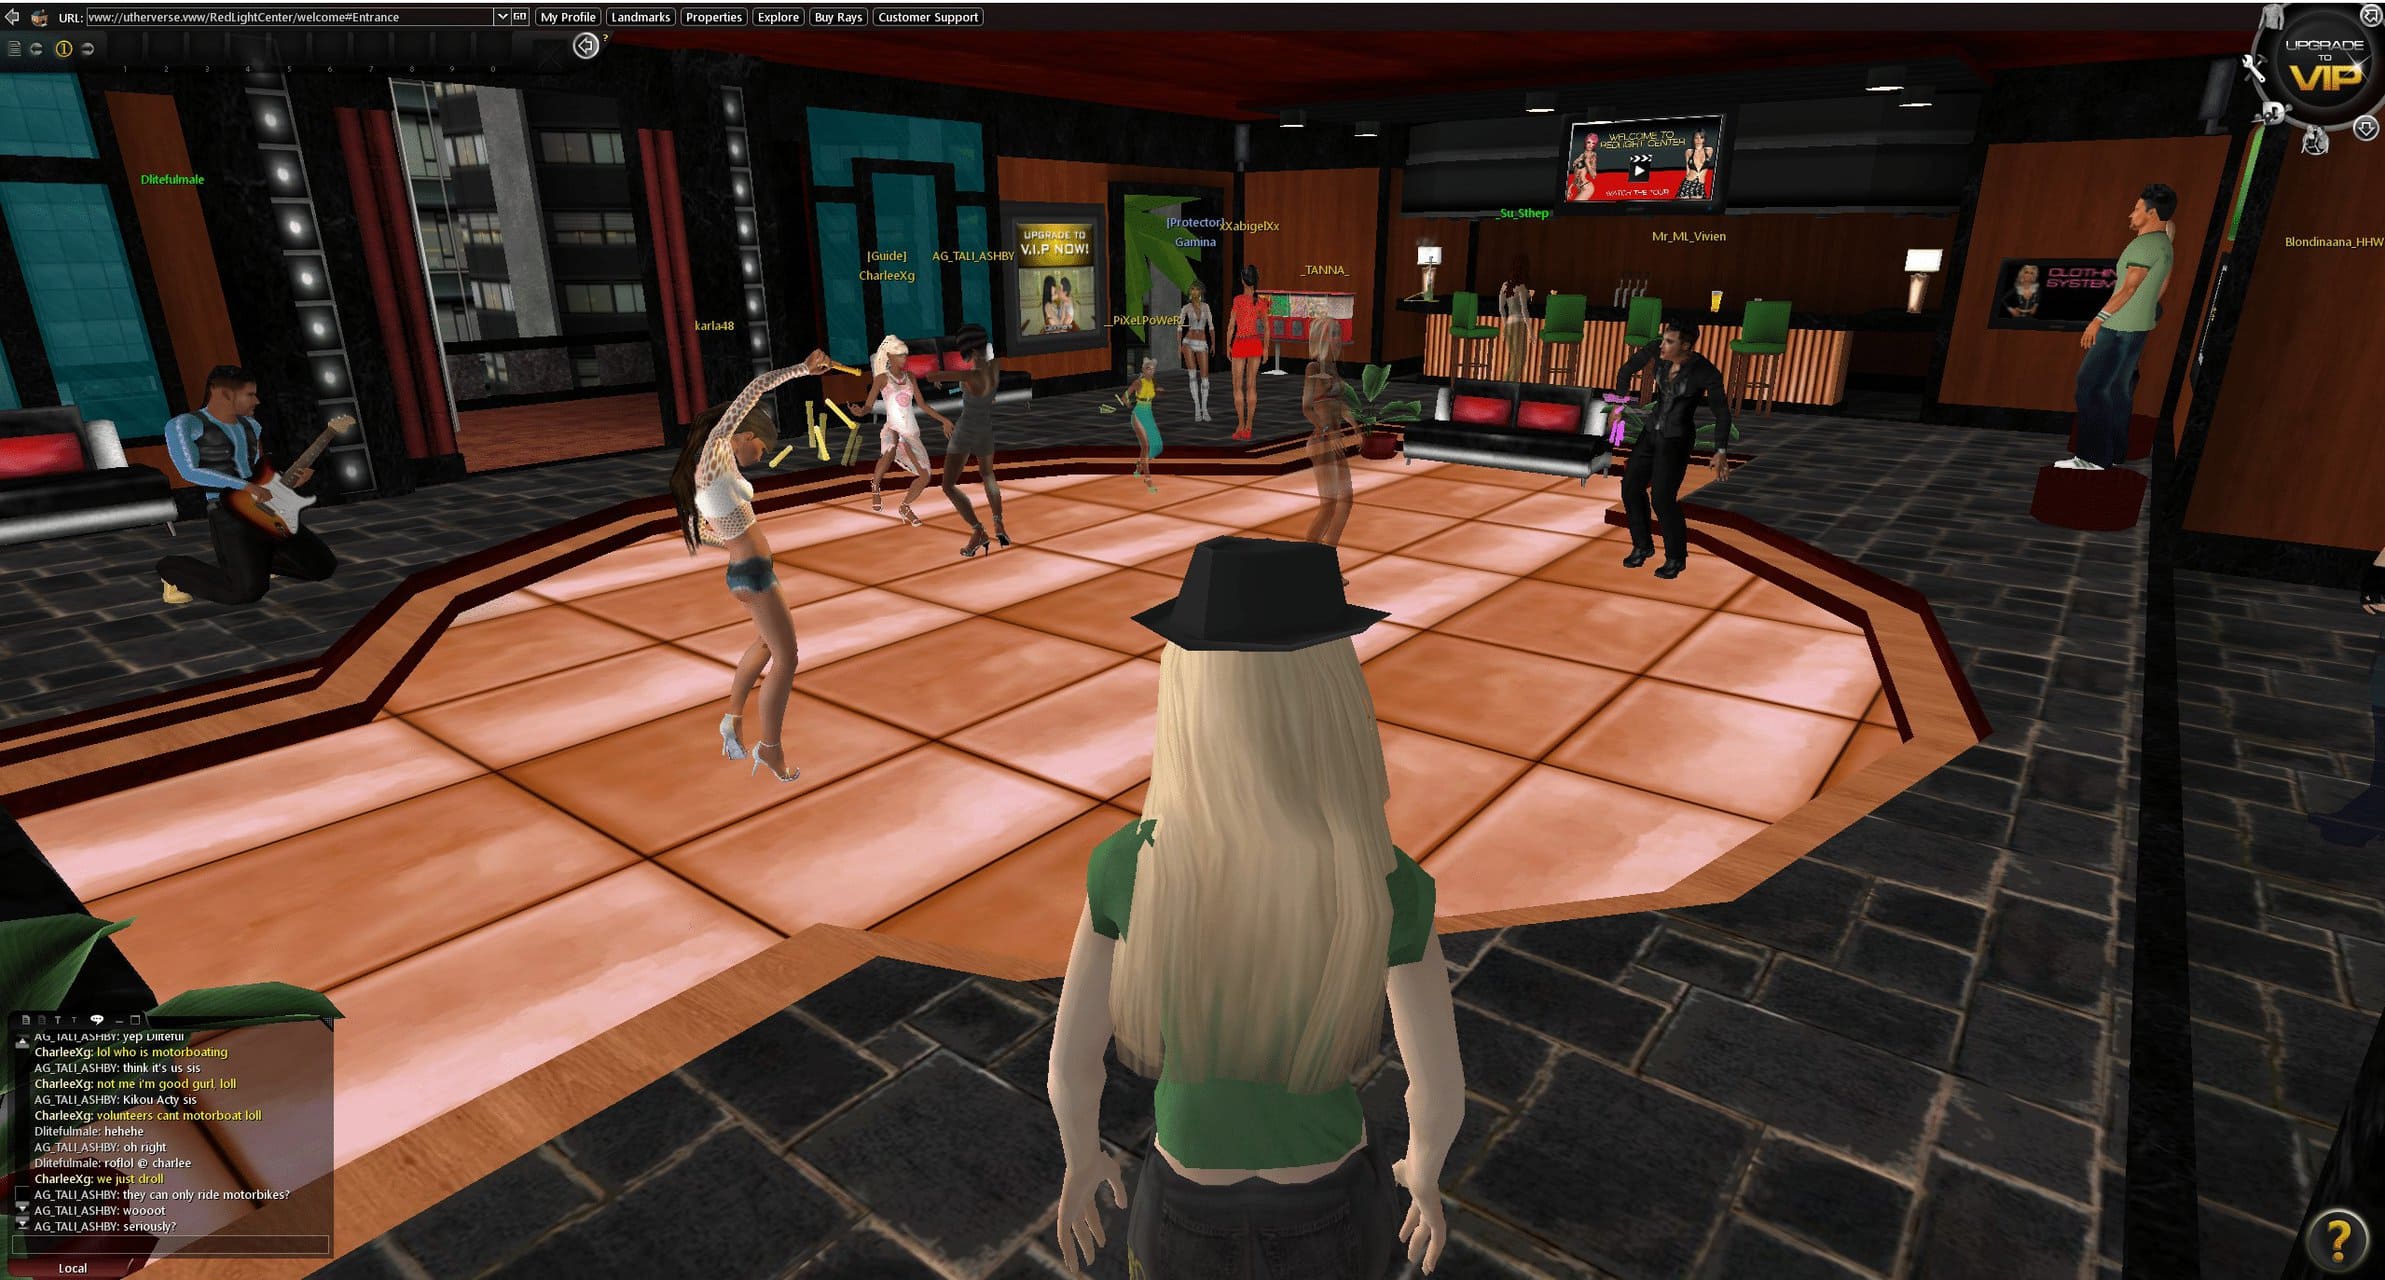 A screenshot of an adult MMORPG featuring a virtual dance floor.